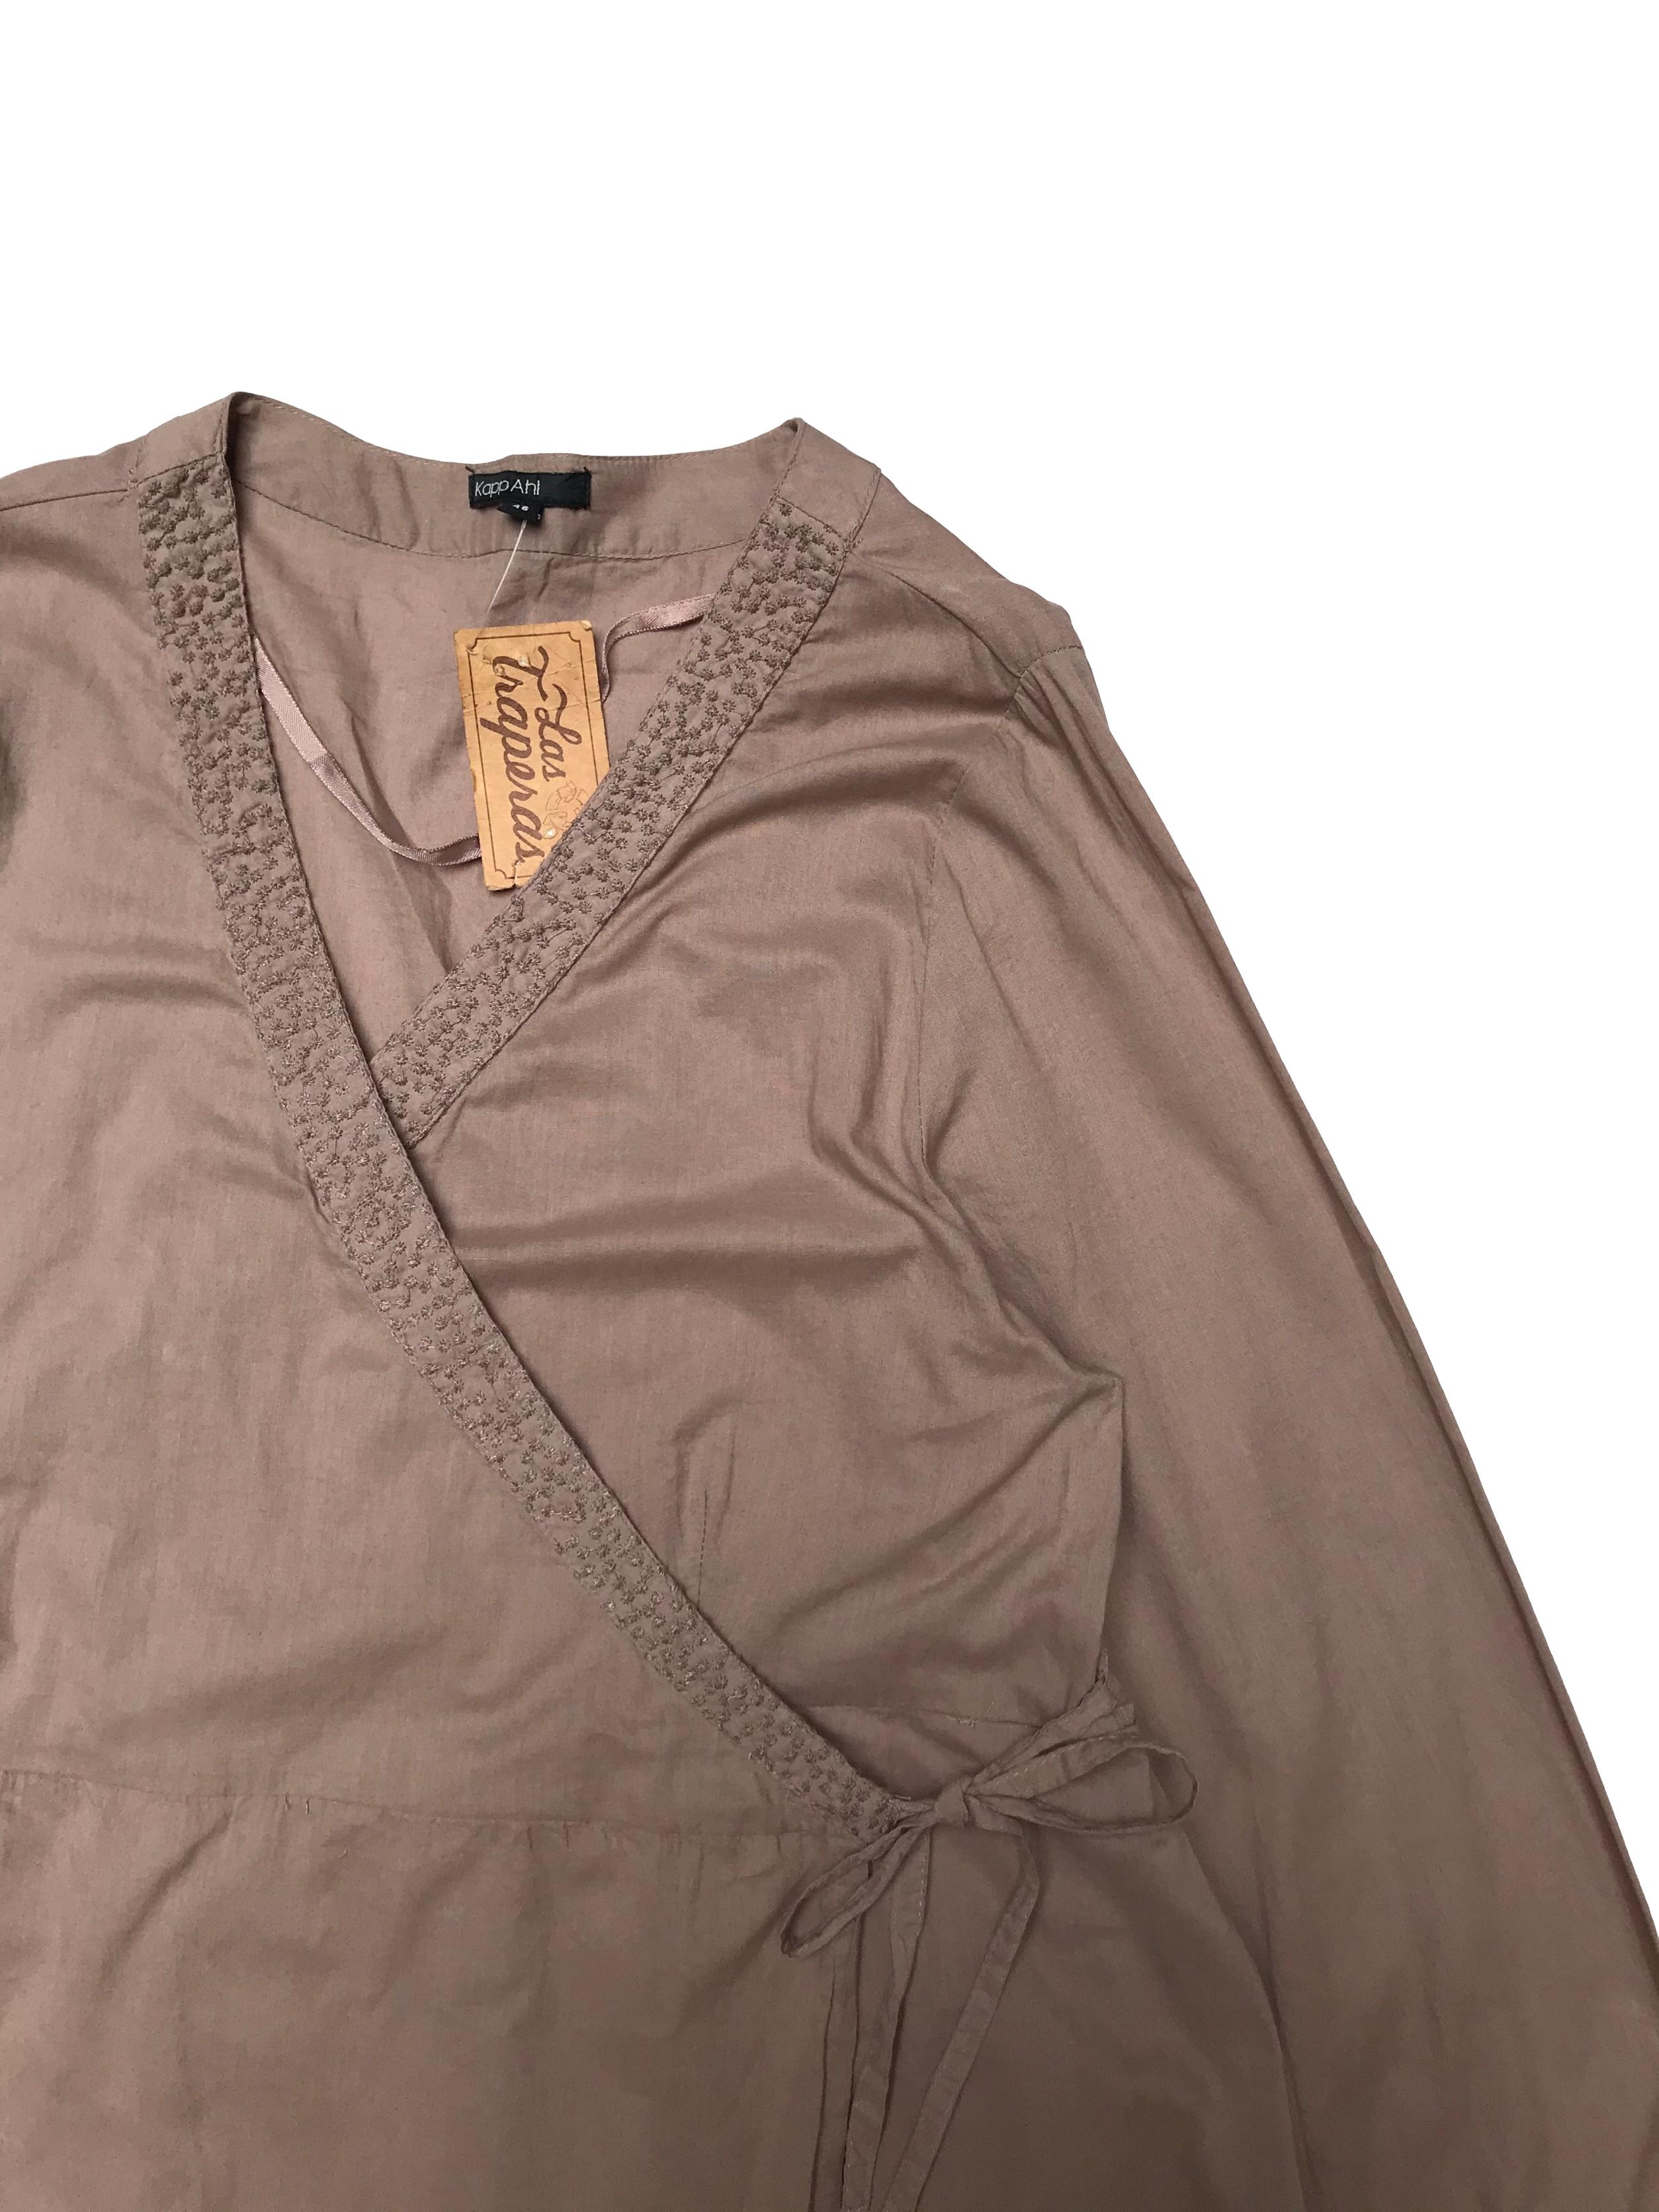 Blusa KappAhl 100% algodón, cruzada con tiras para amarrar, bordado en cuello y recogido en puños. Largo 75cm